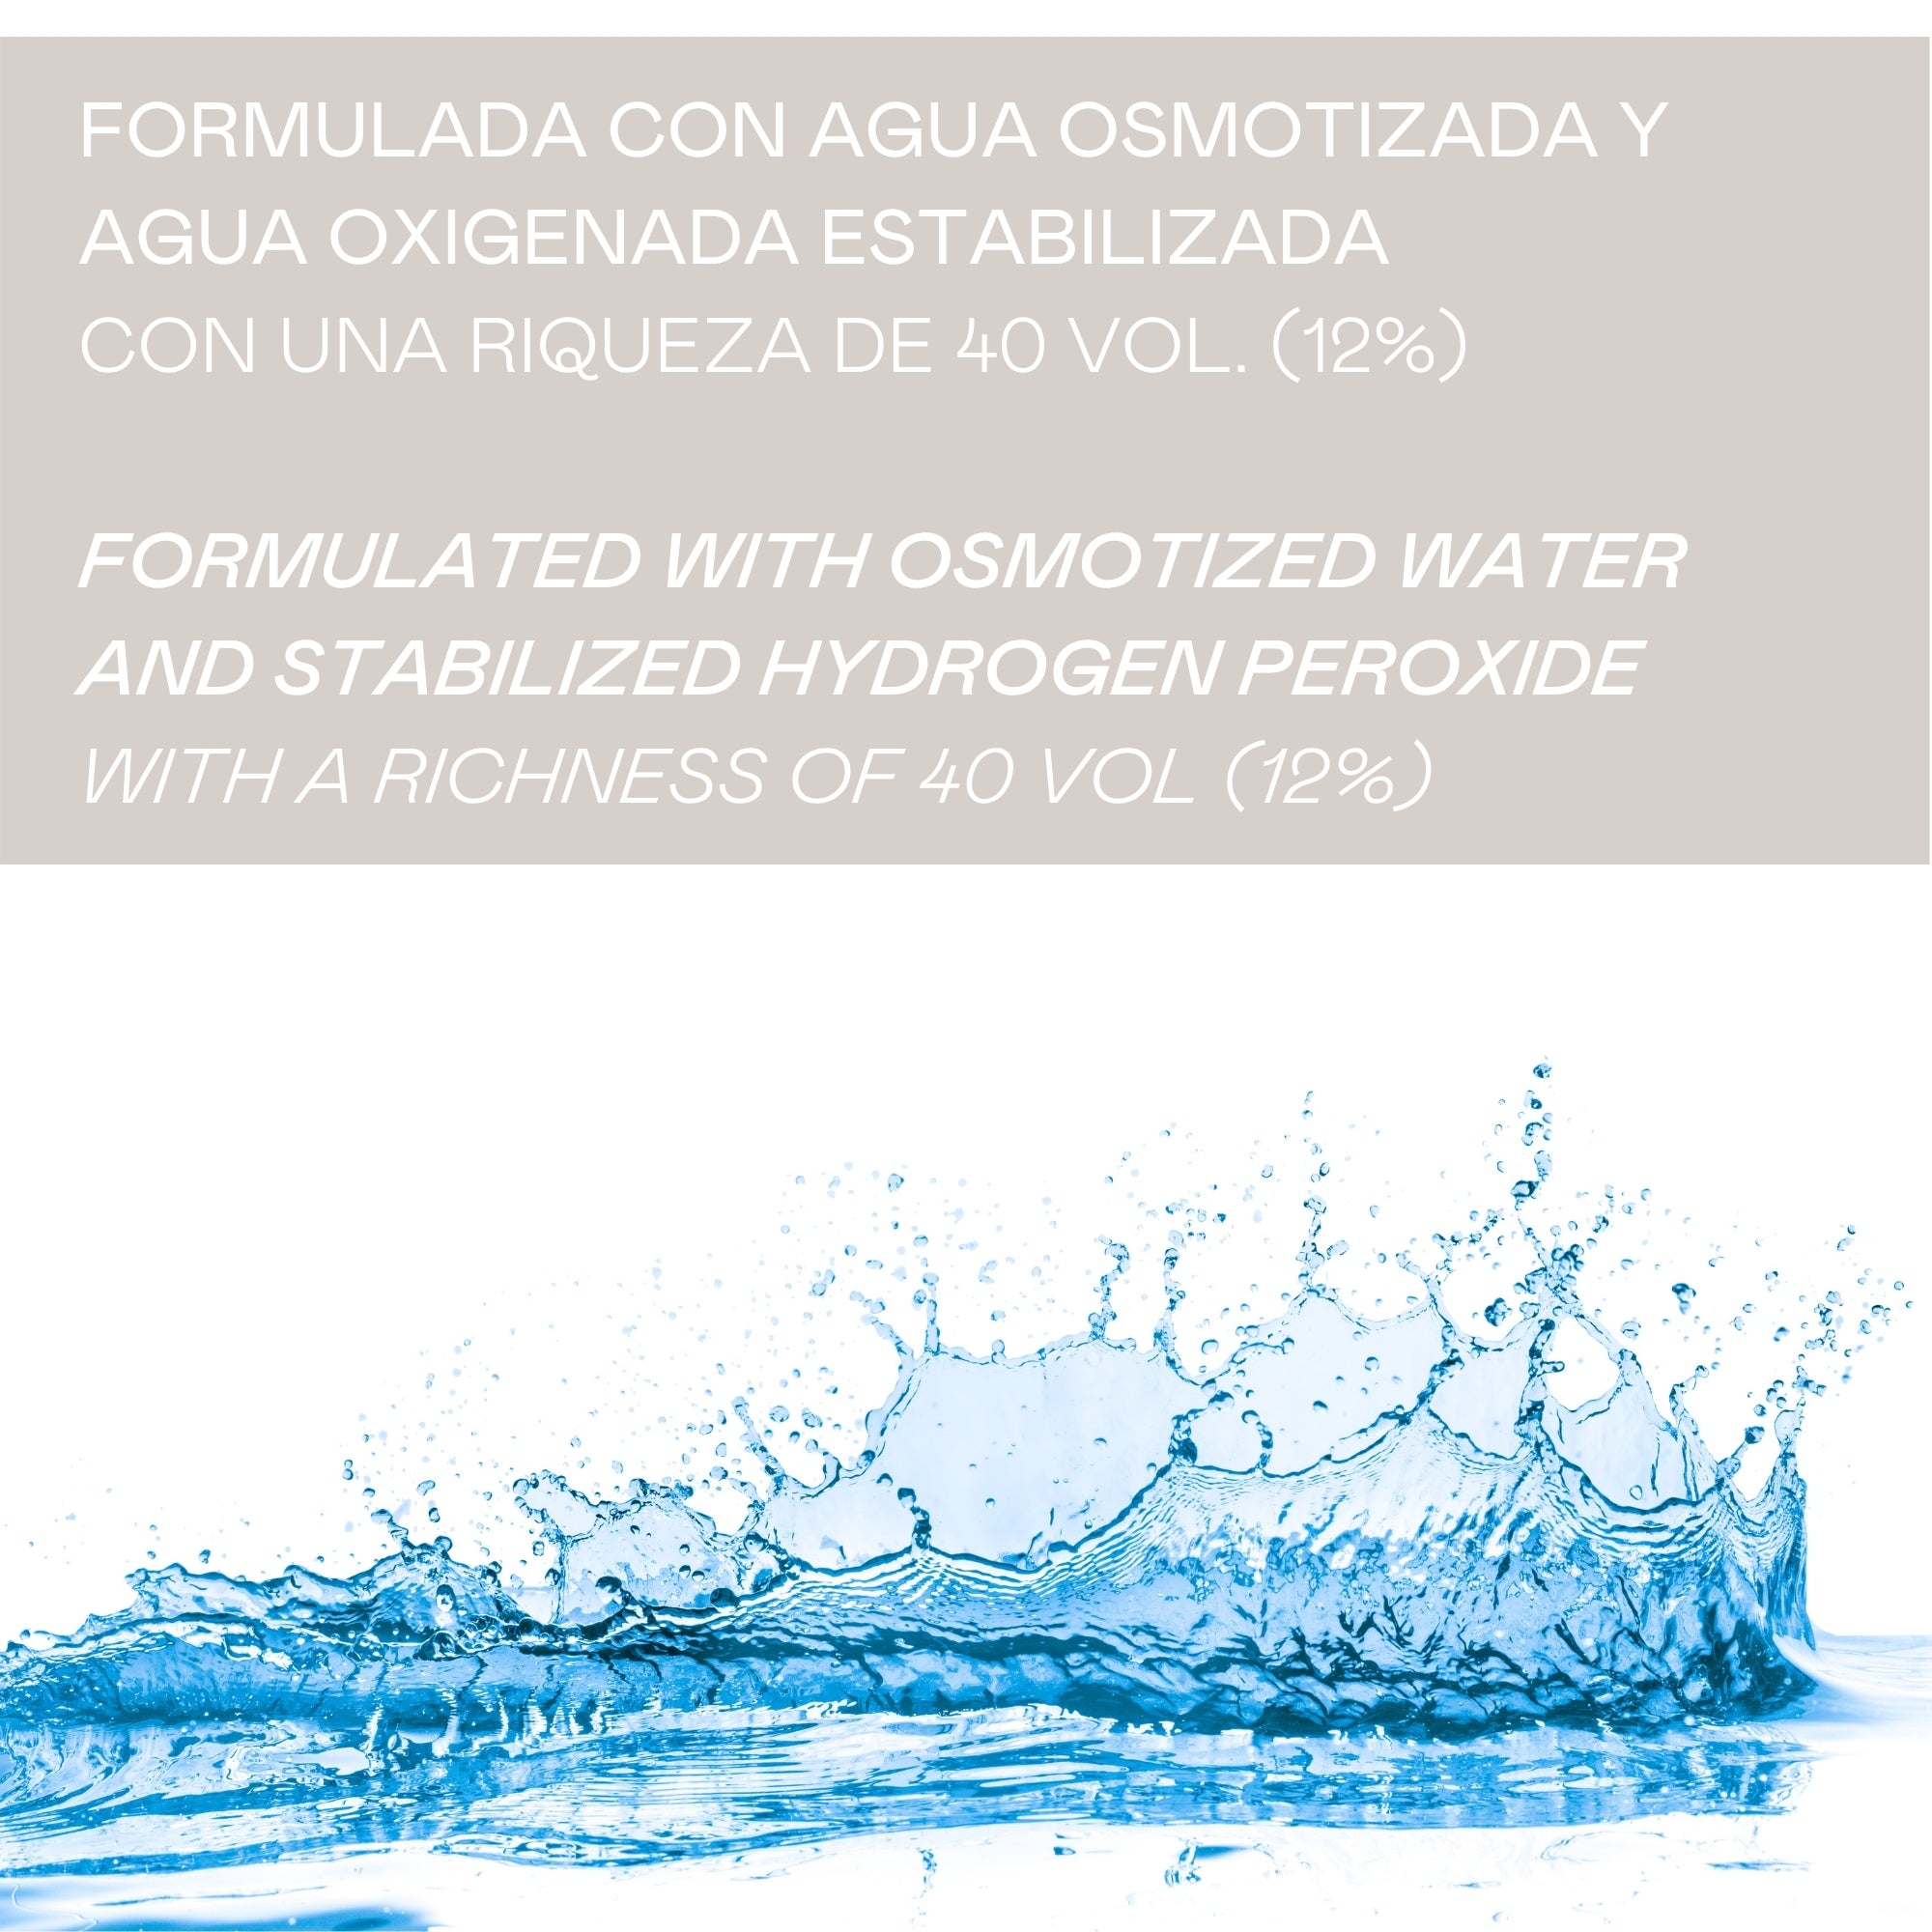 Valquer Profesional Oxigenada Estabilizada en Crema, 40 Volumenes (12%).  Coloración capilar permanente. Uso profesional peluquería. Formulación  vegana